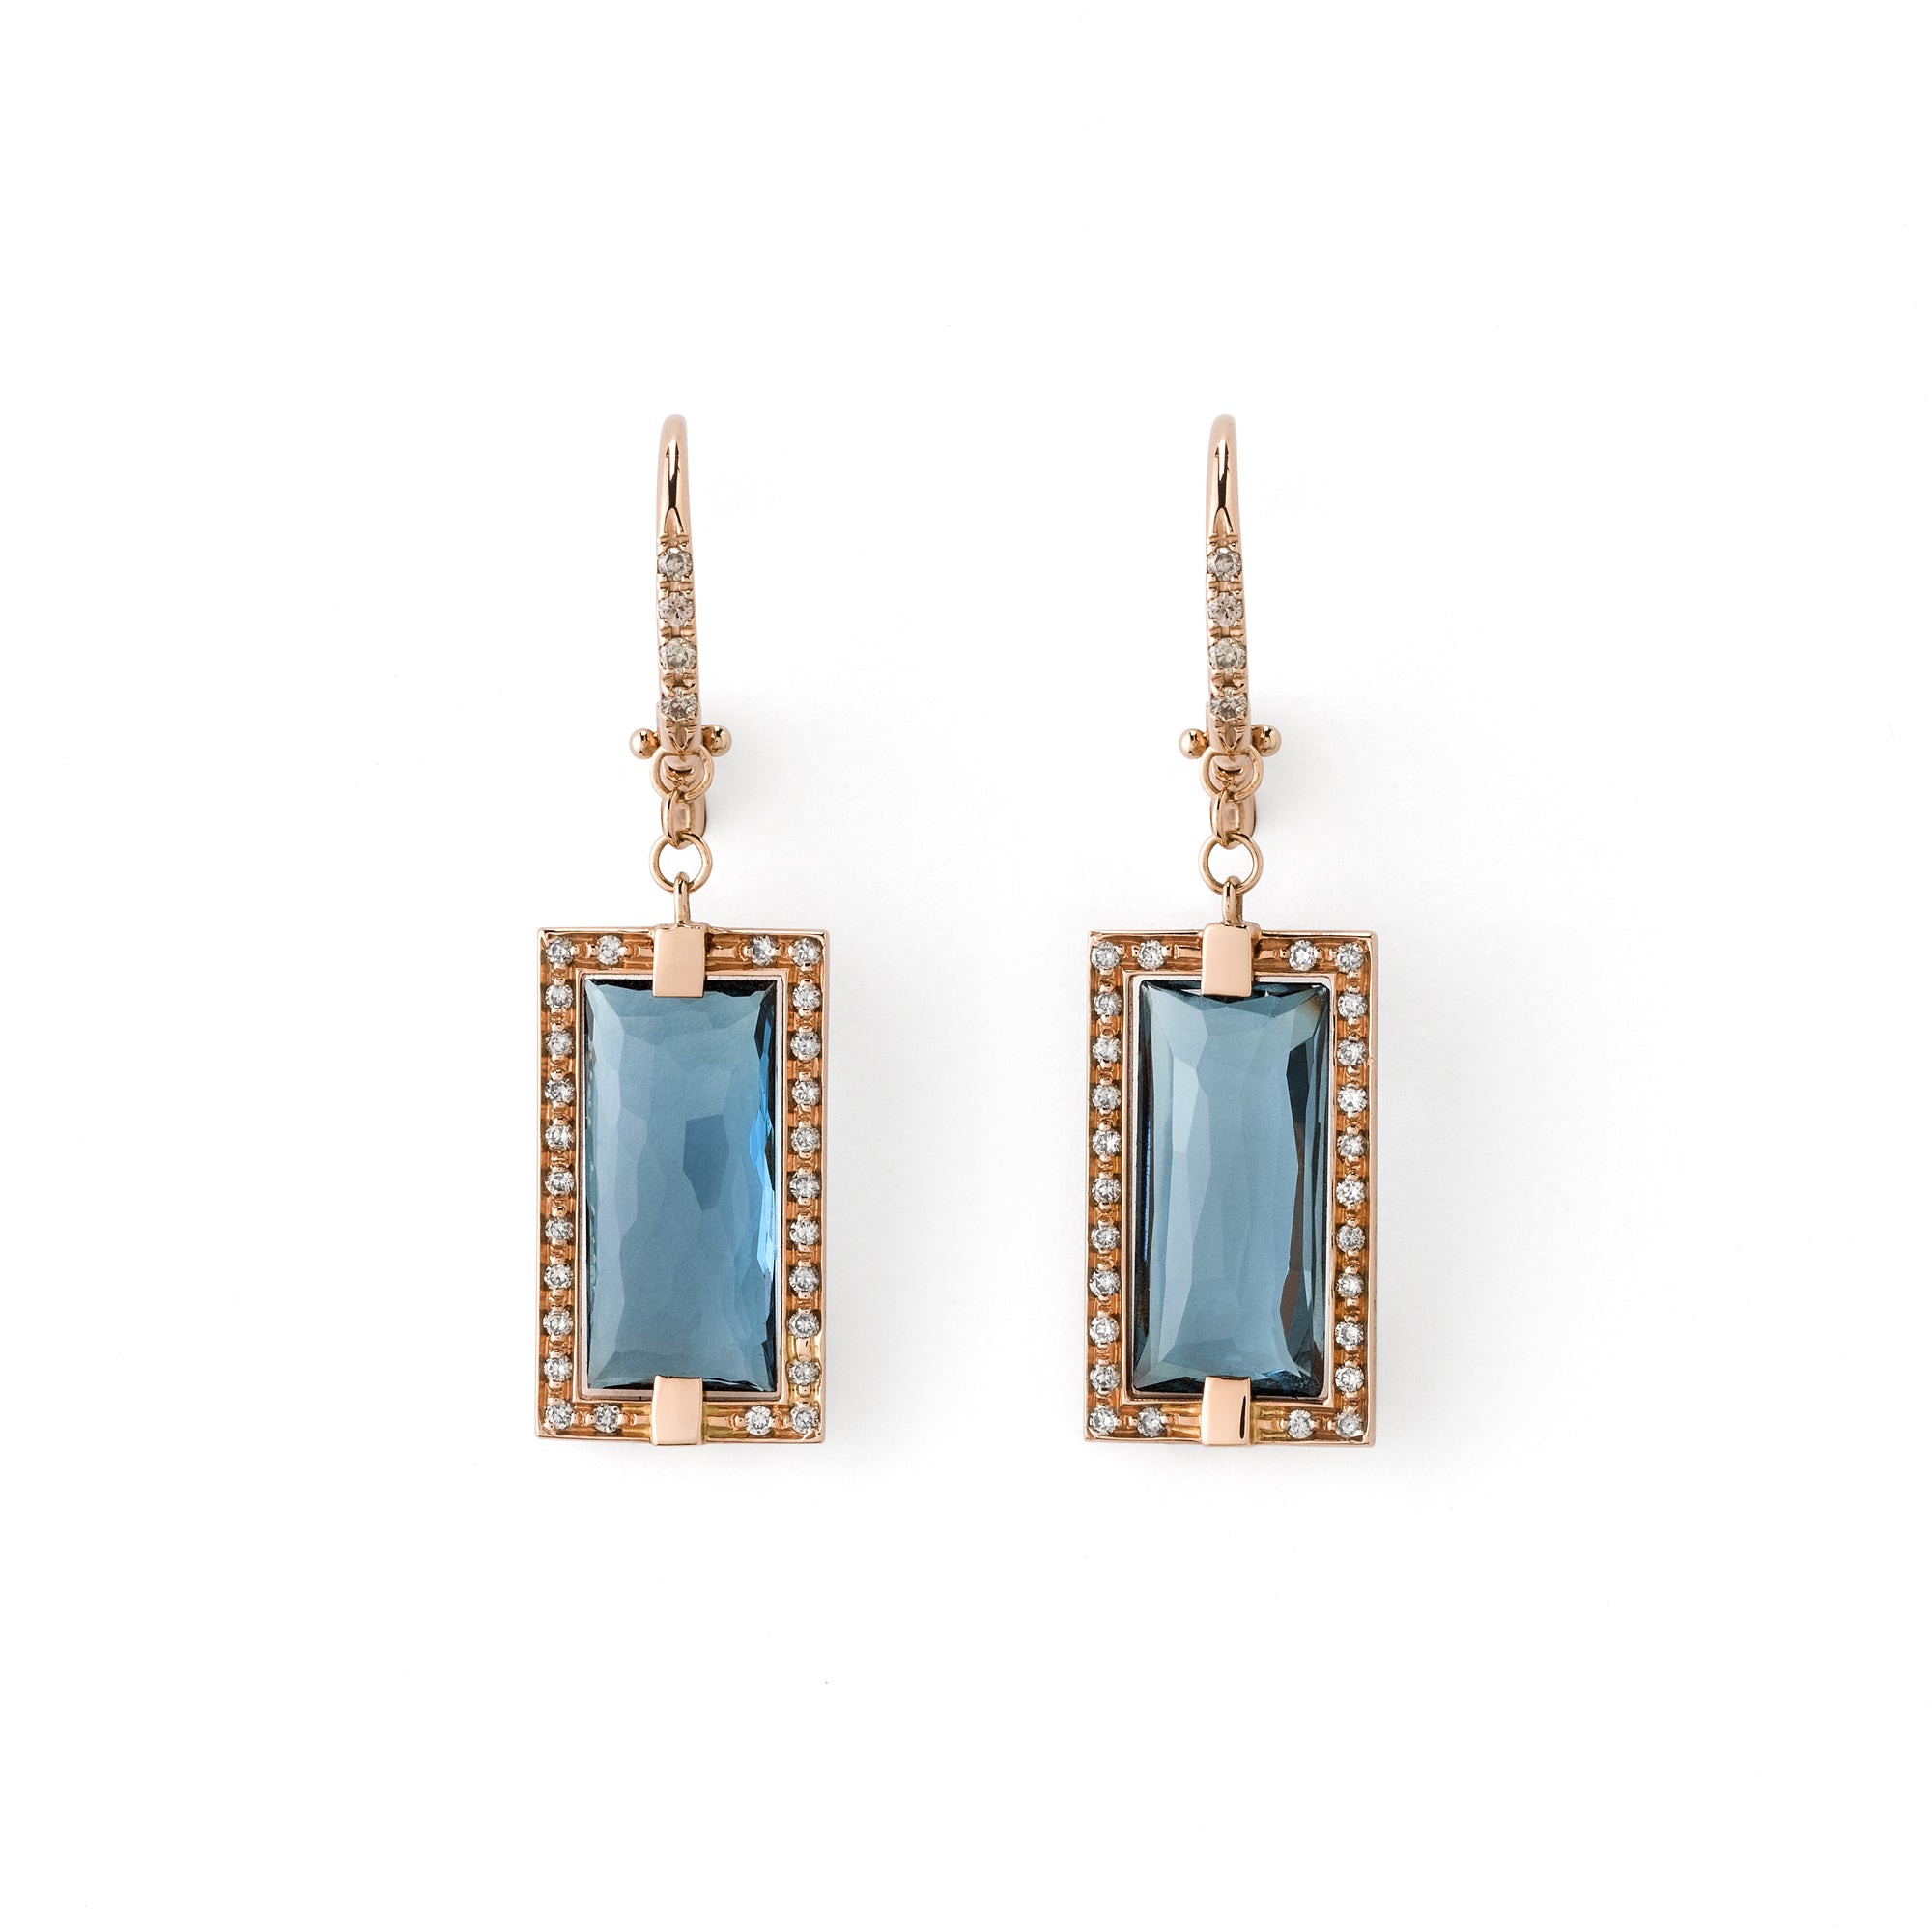 Profondo Blu rose gold earrings